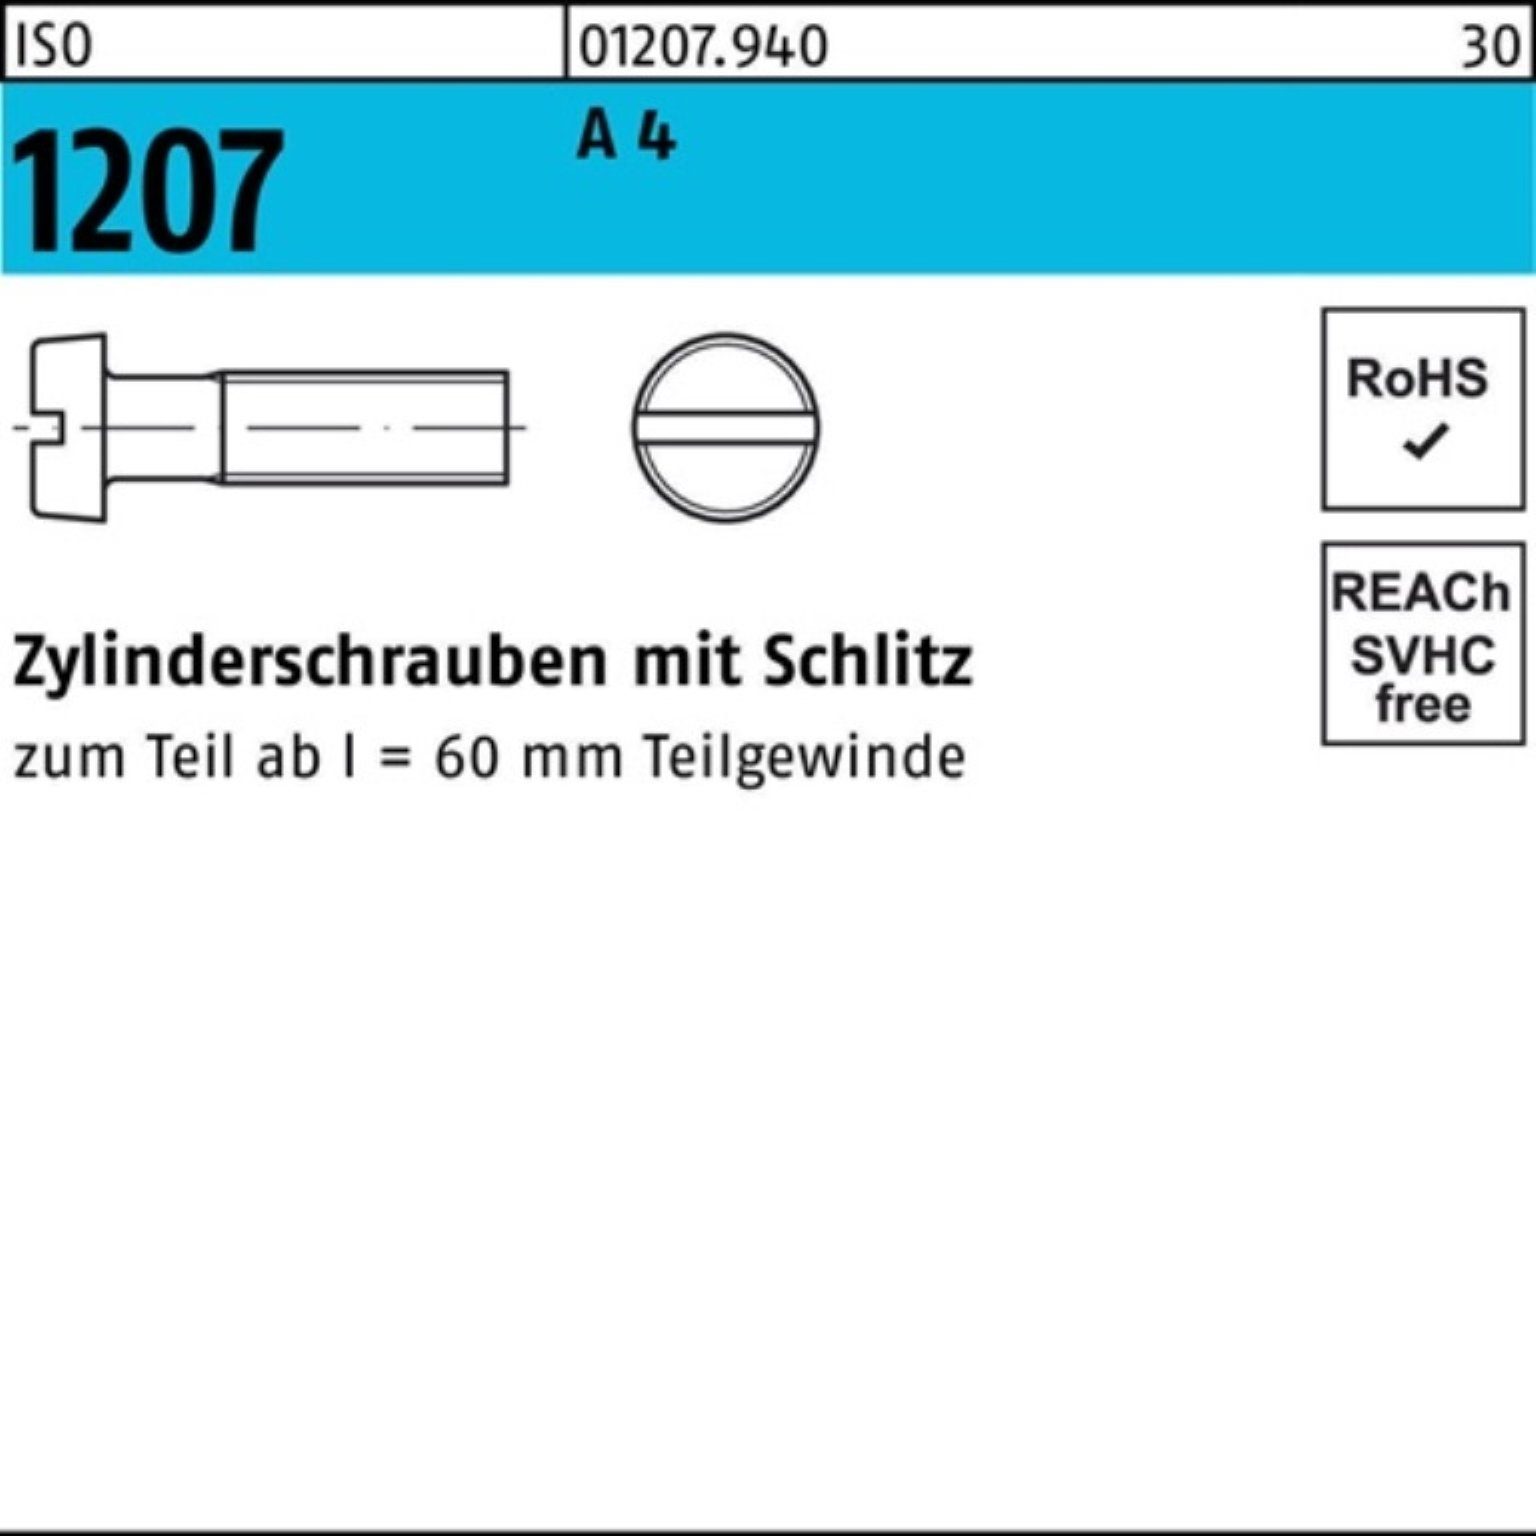 200 M4x 4 ISO A Zylinderschraube Pack 1207 ISO 12 Zylinderschraube Stück Reyher Schlitz 200er